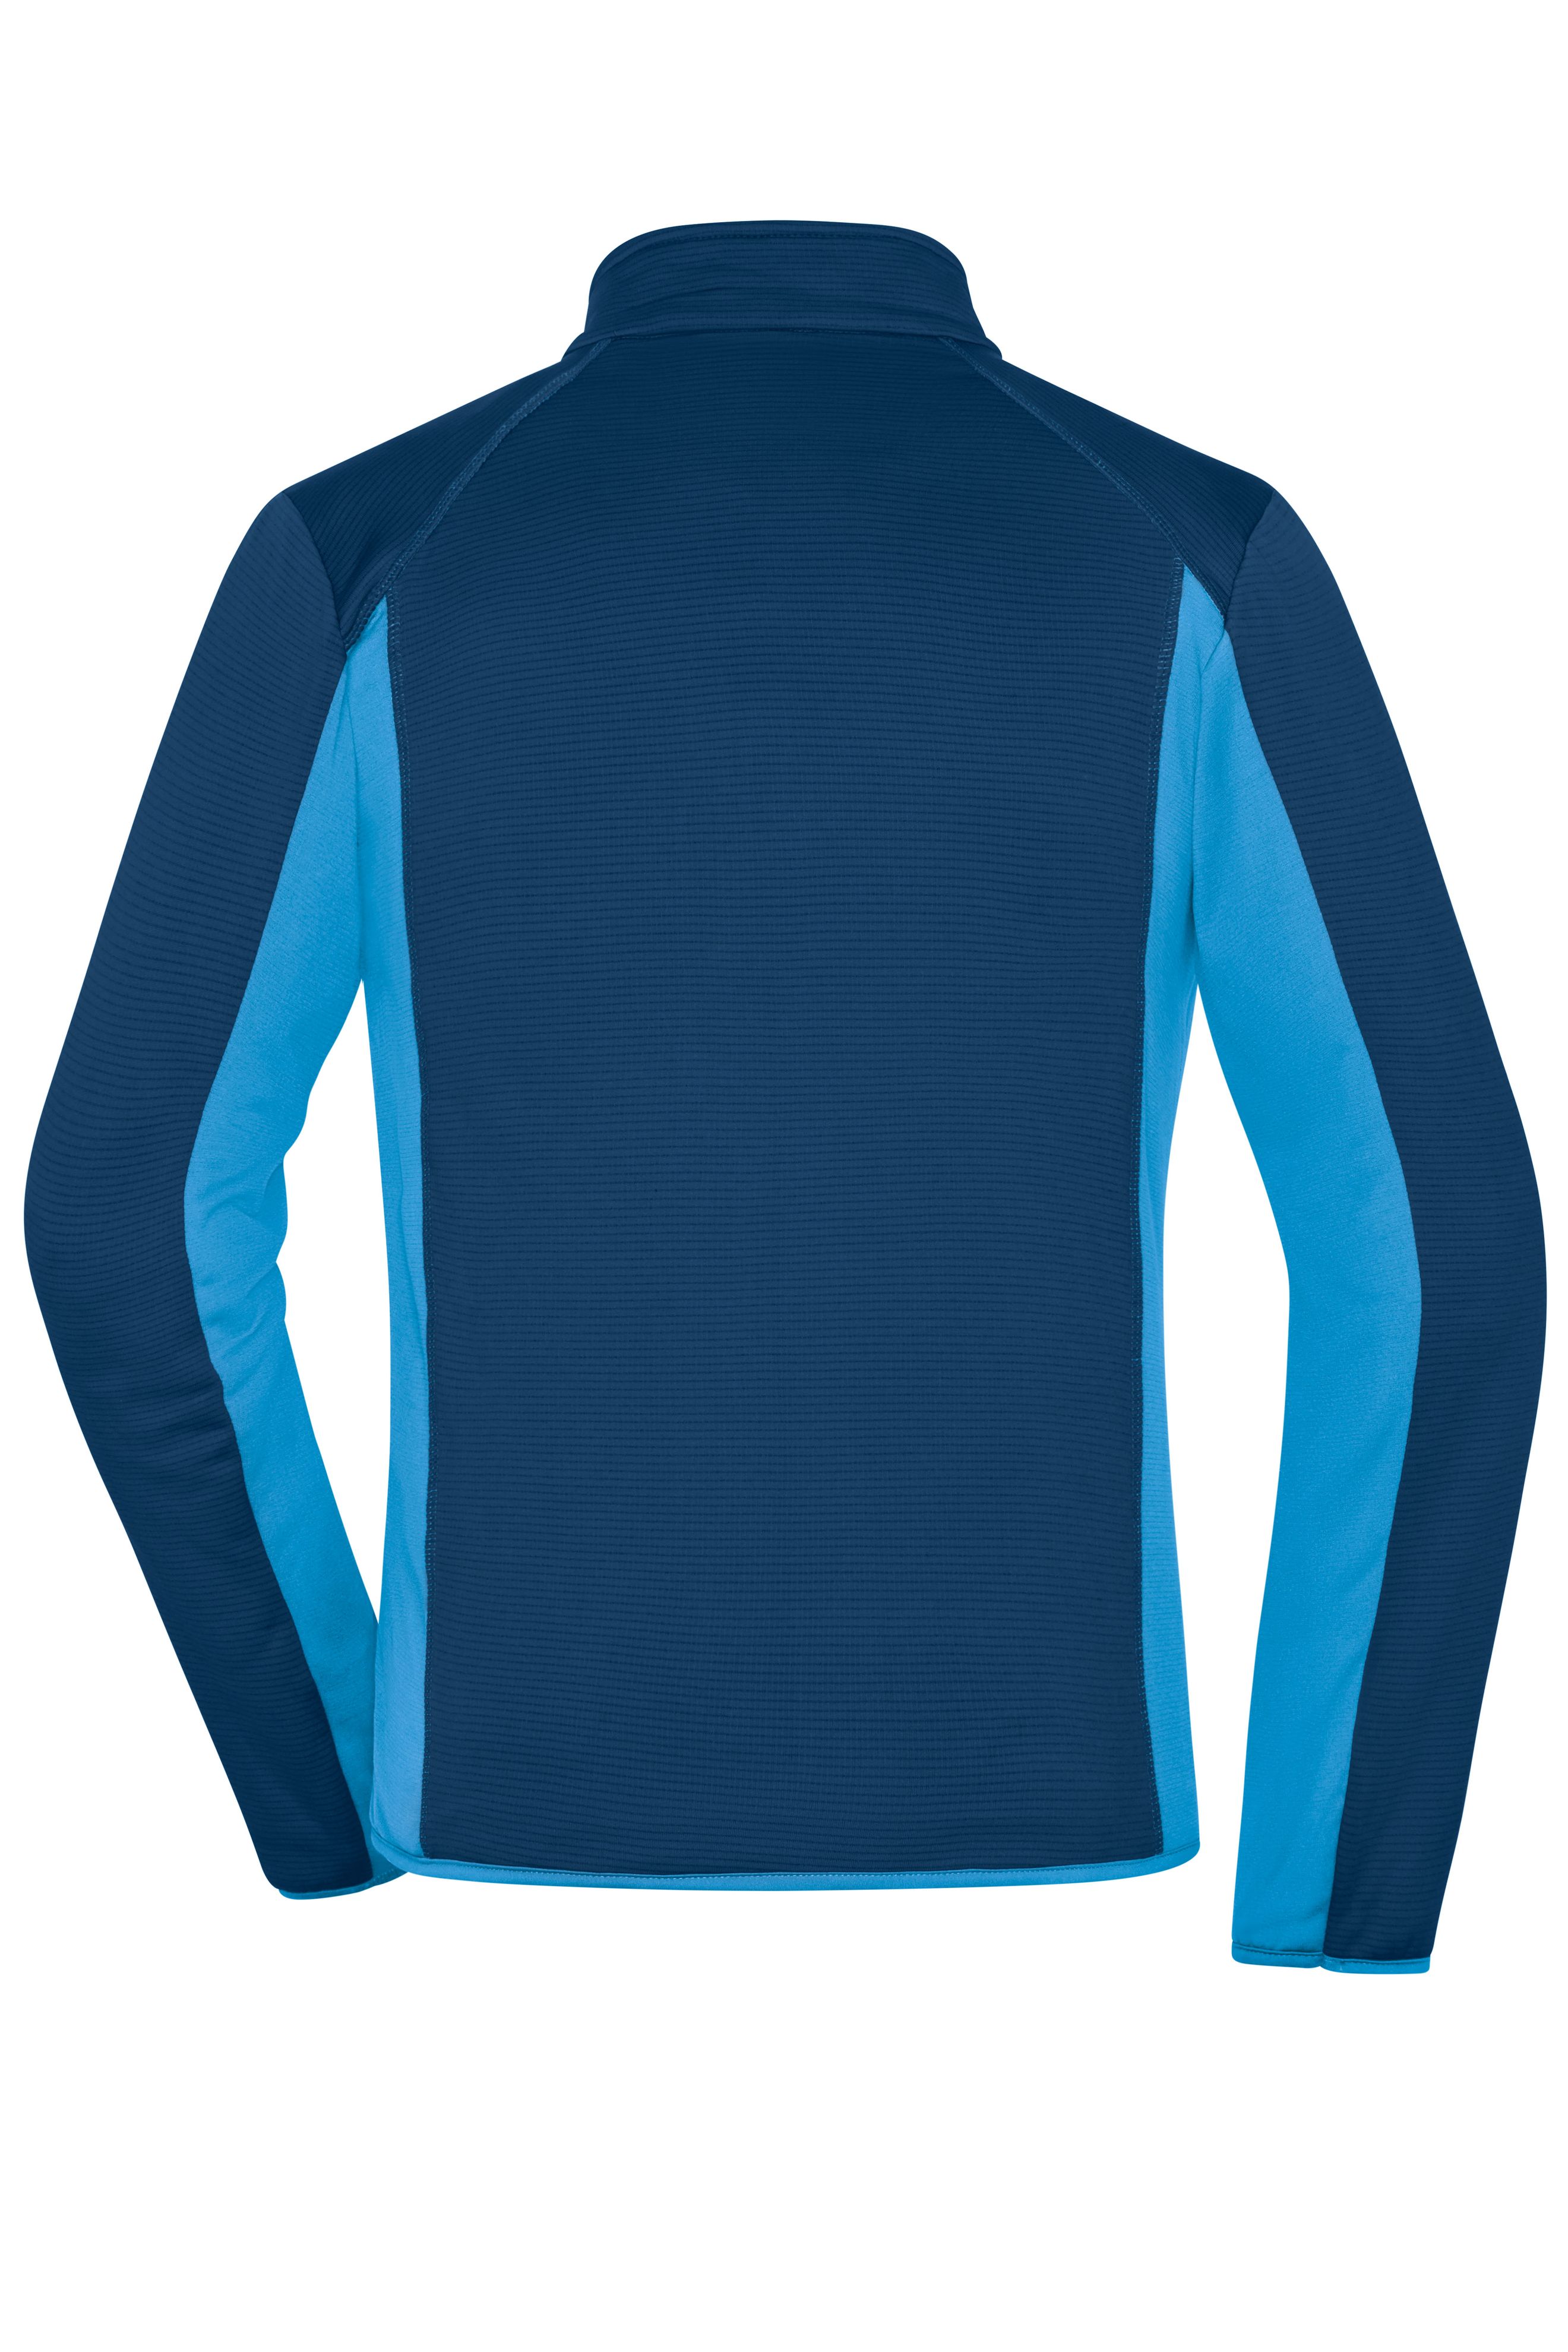 Men Men's Structure Fleece Jacket Navy/bright-blue-Promotextilien.de